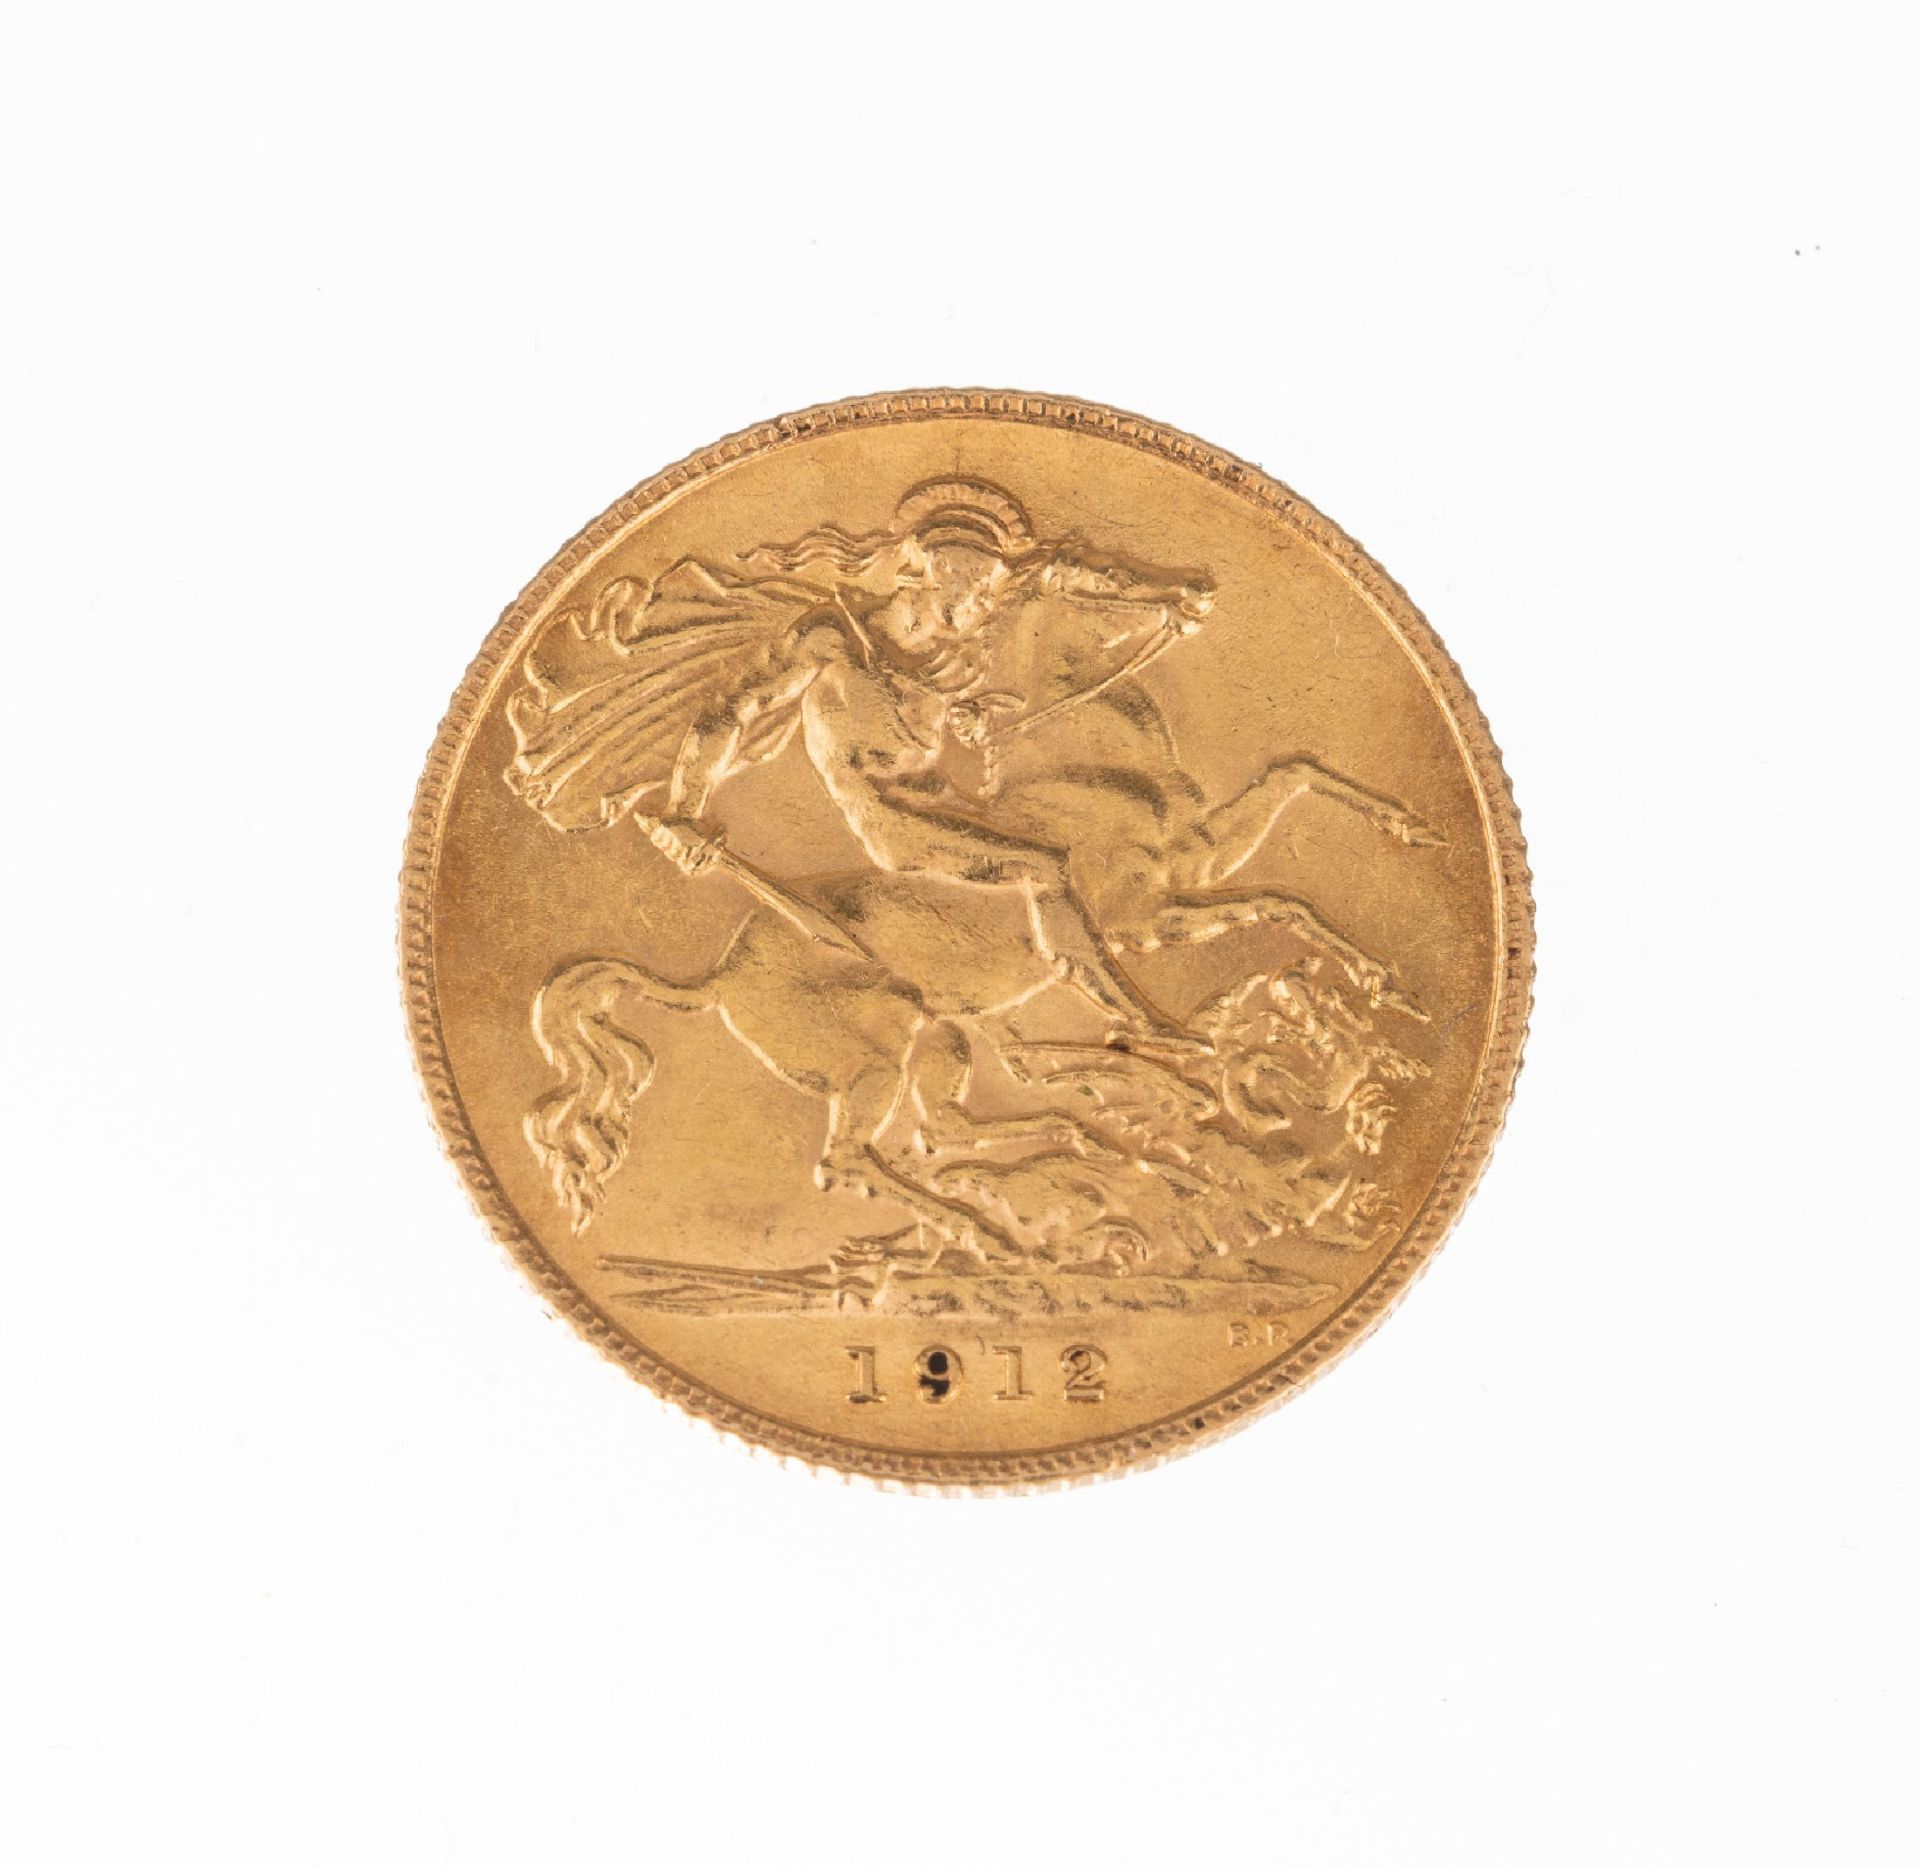 Goldmünze sogn. Sovereign, Großbritannien 1912, Georg V, - Bild 2 aus 2